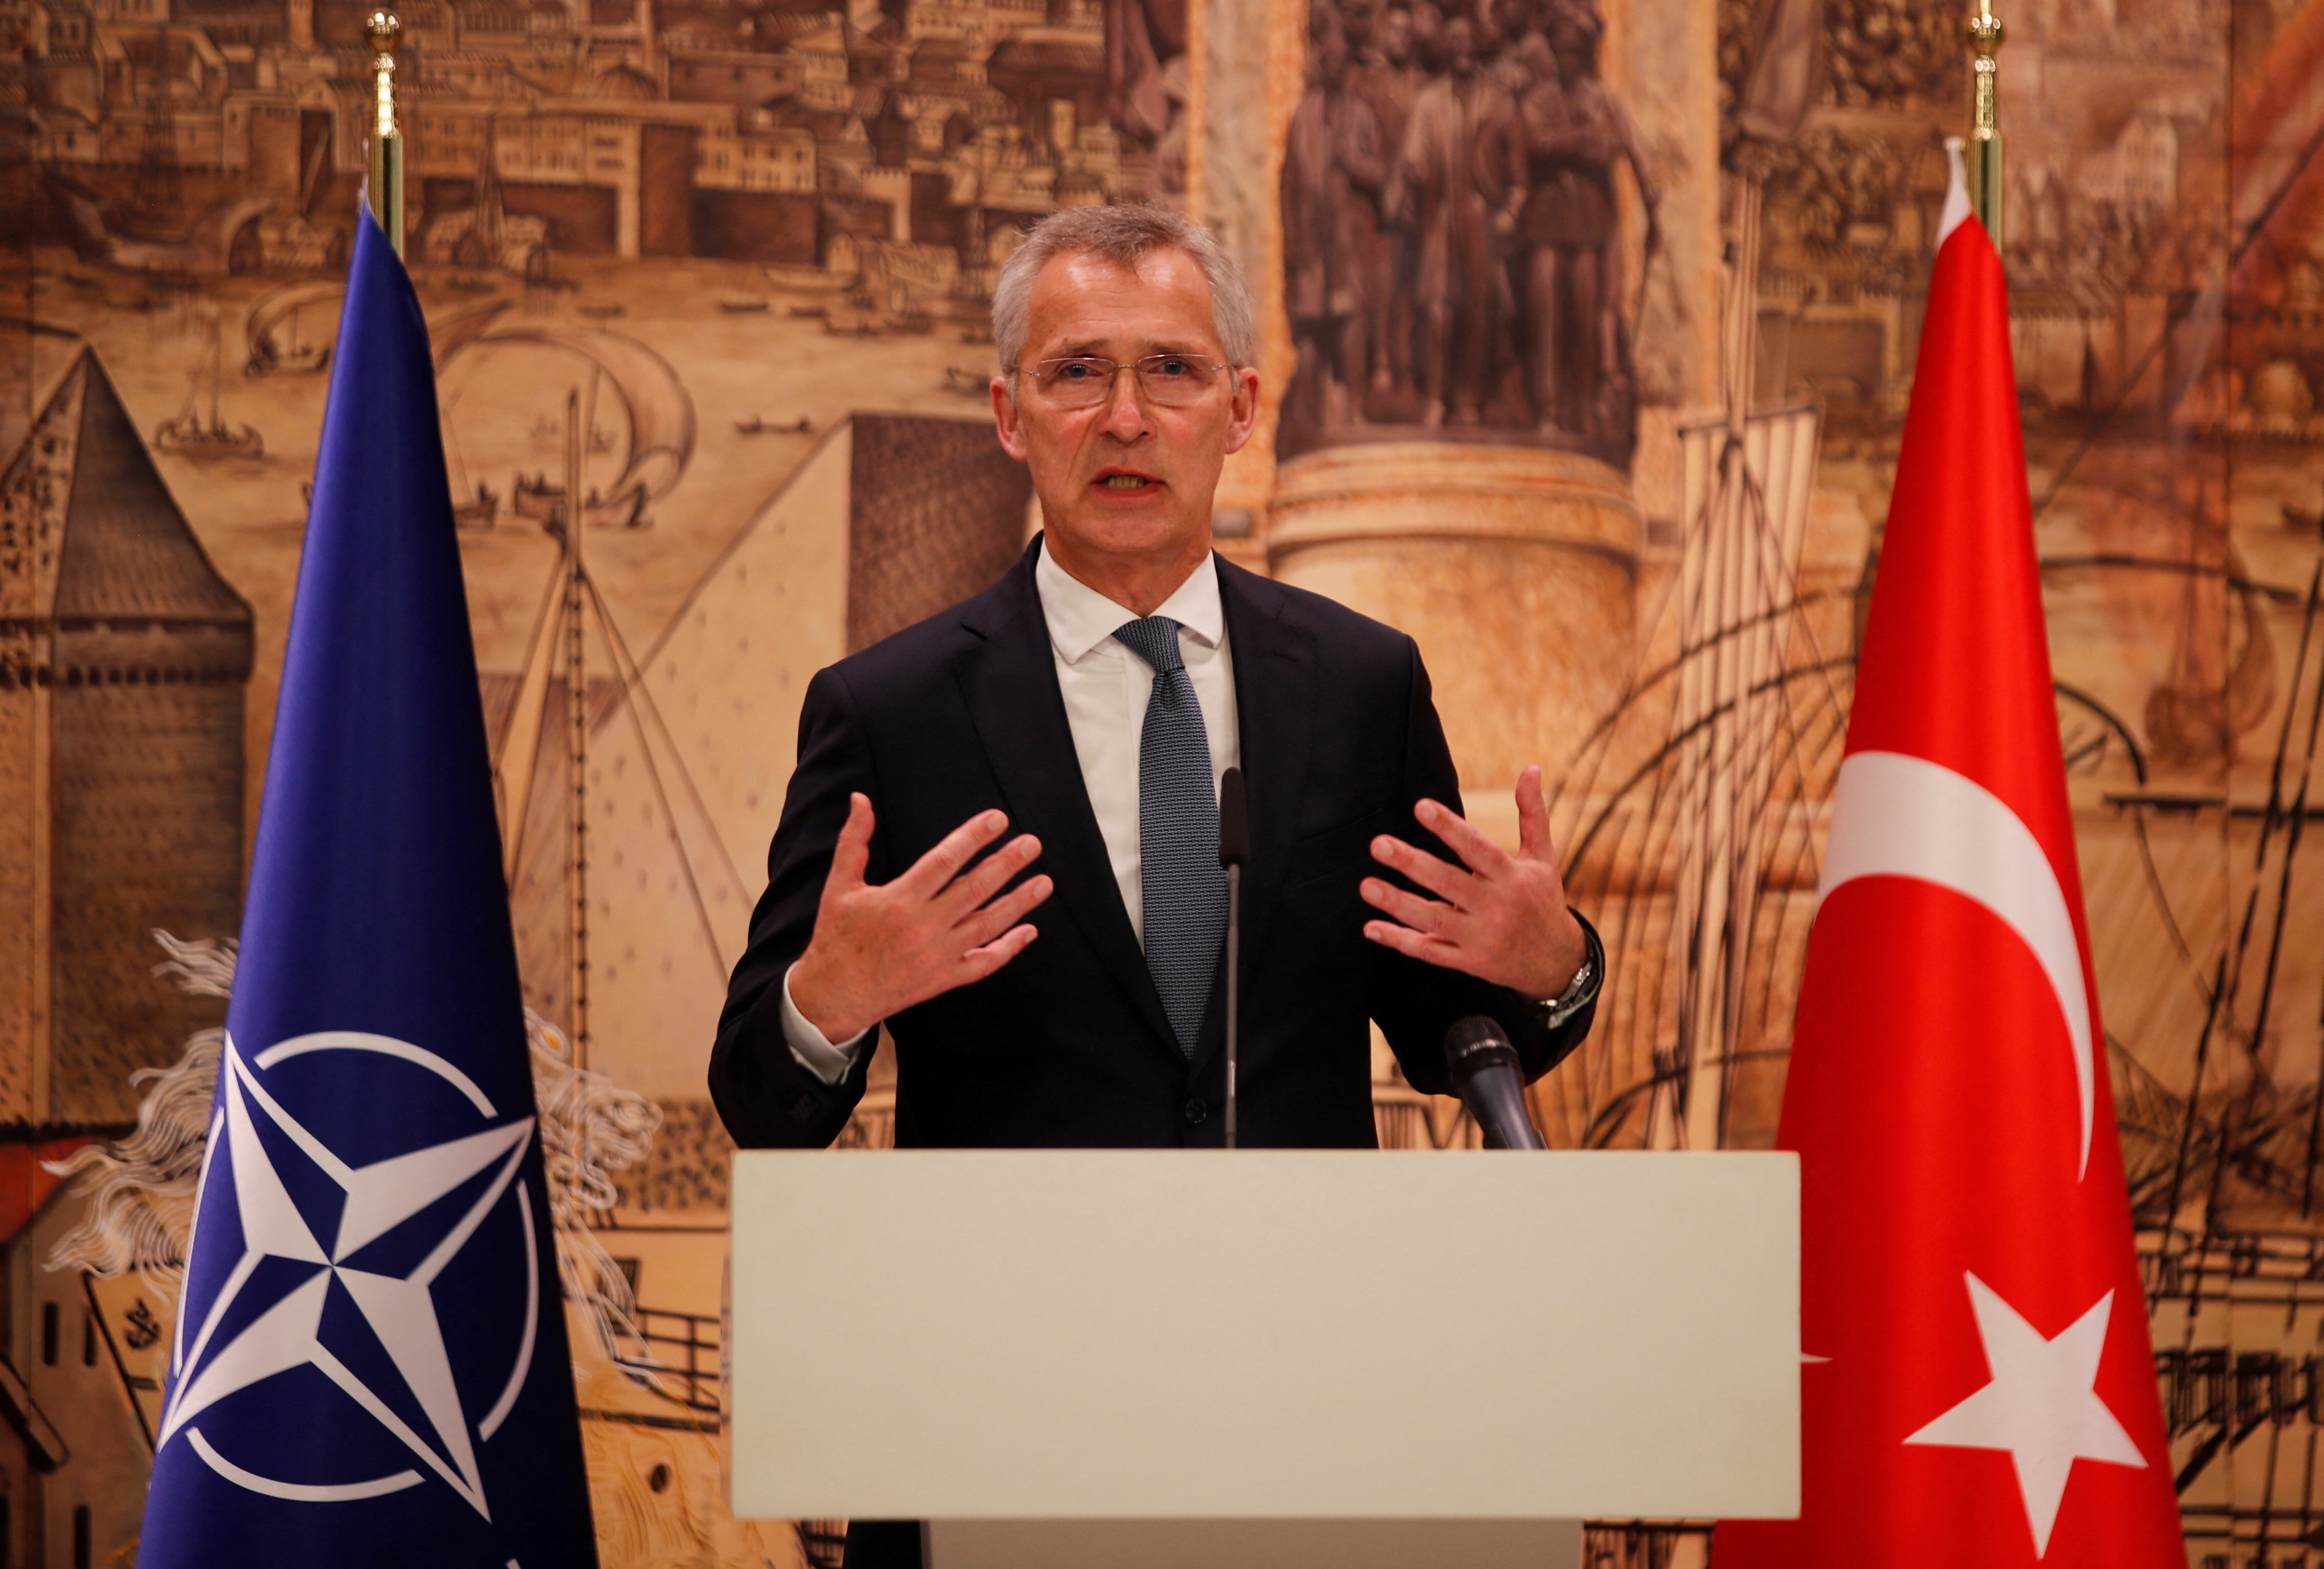 El jefe de la OTAN volvió a pedir a Erdogan que levante el veto a la candidatura de Suecia: “Estocolmo ha cumplido la exigencias de Turquía” 